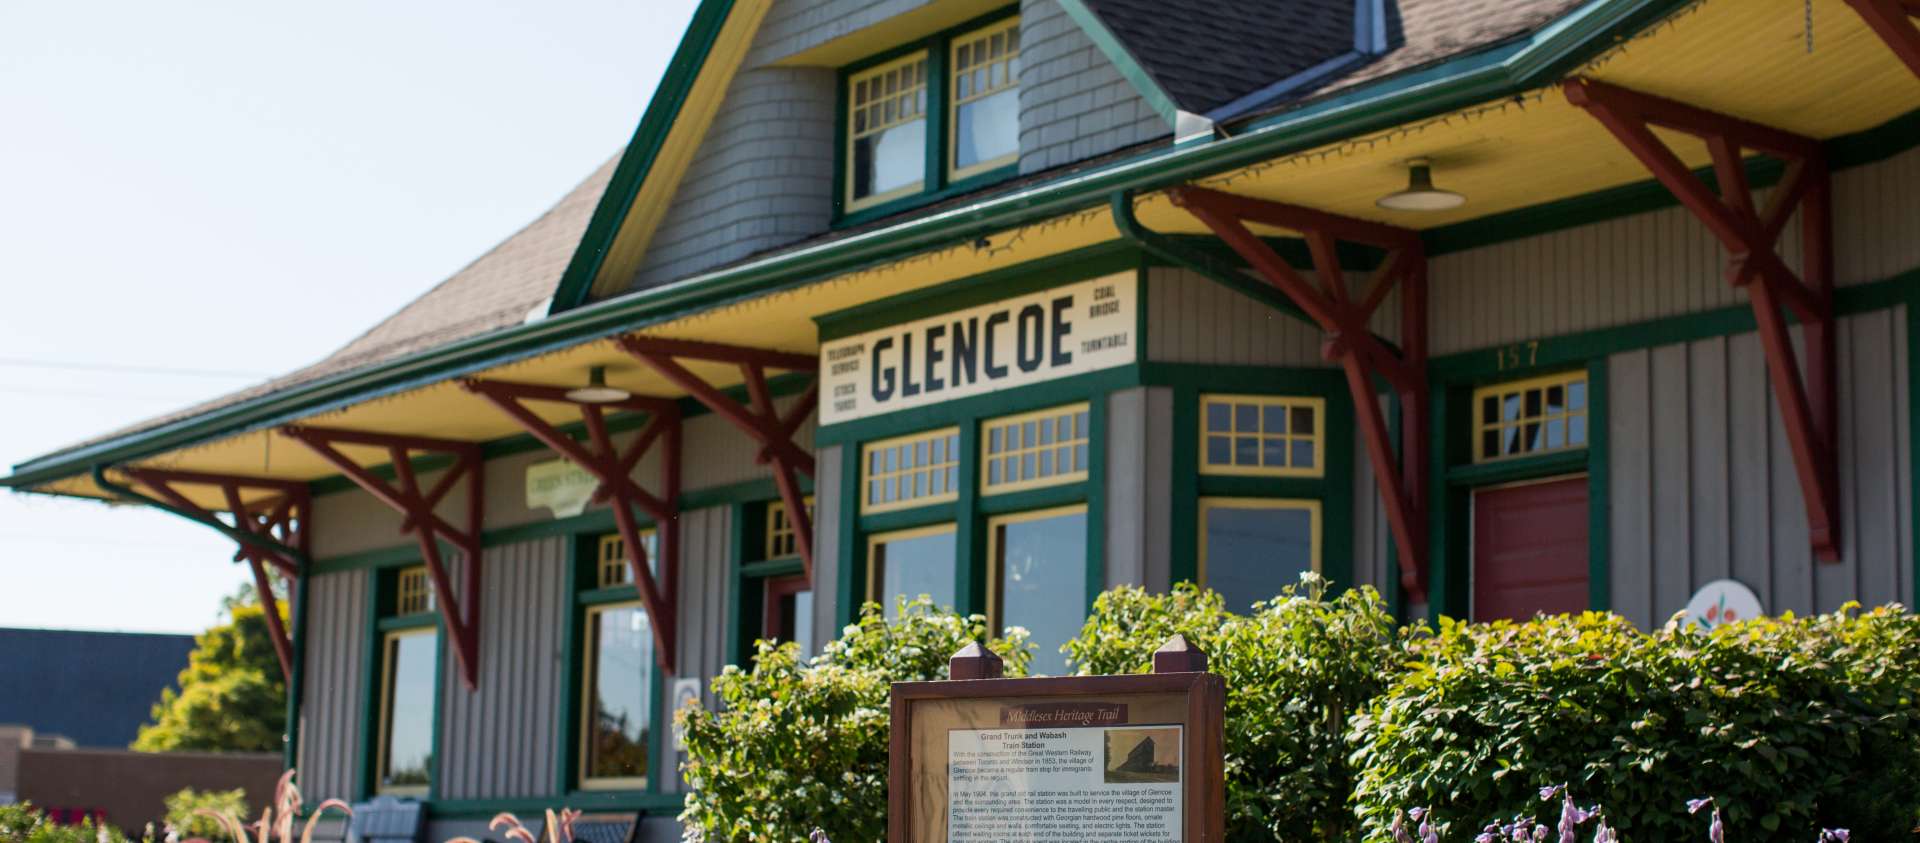 Glencoe Train Station Image